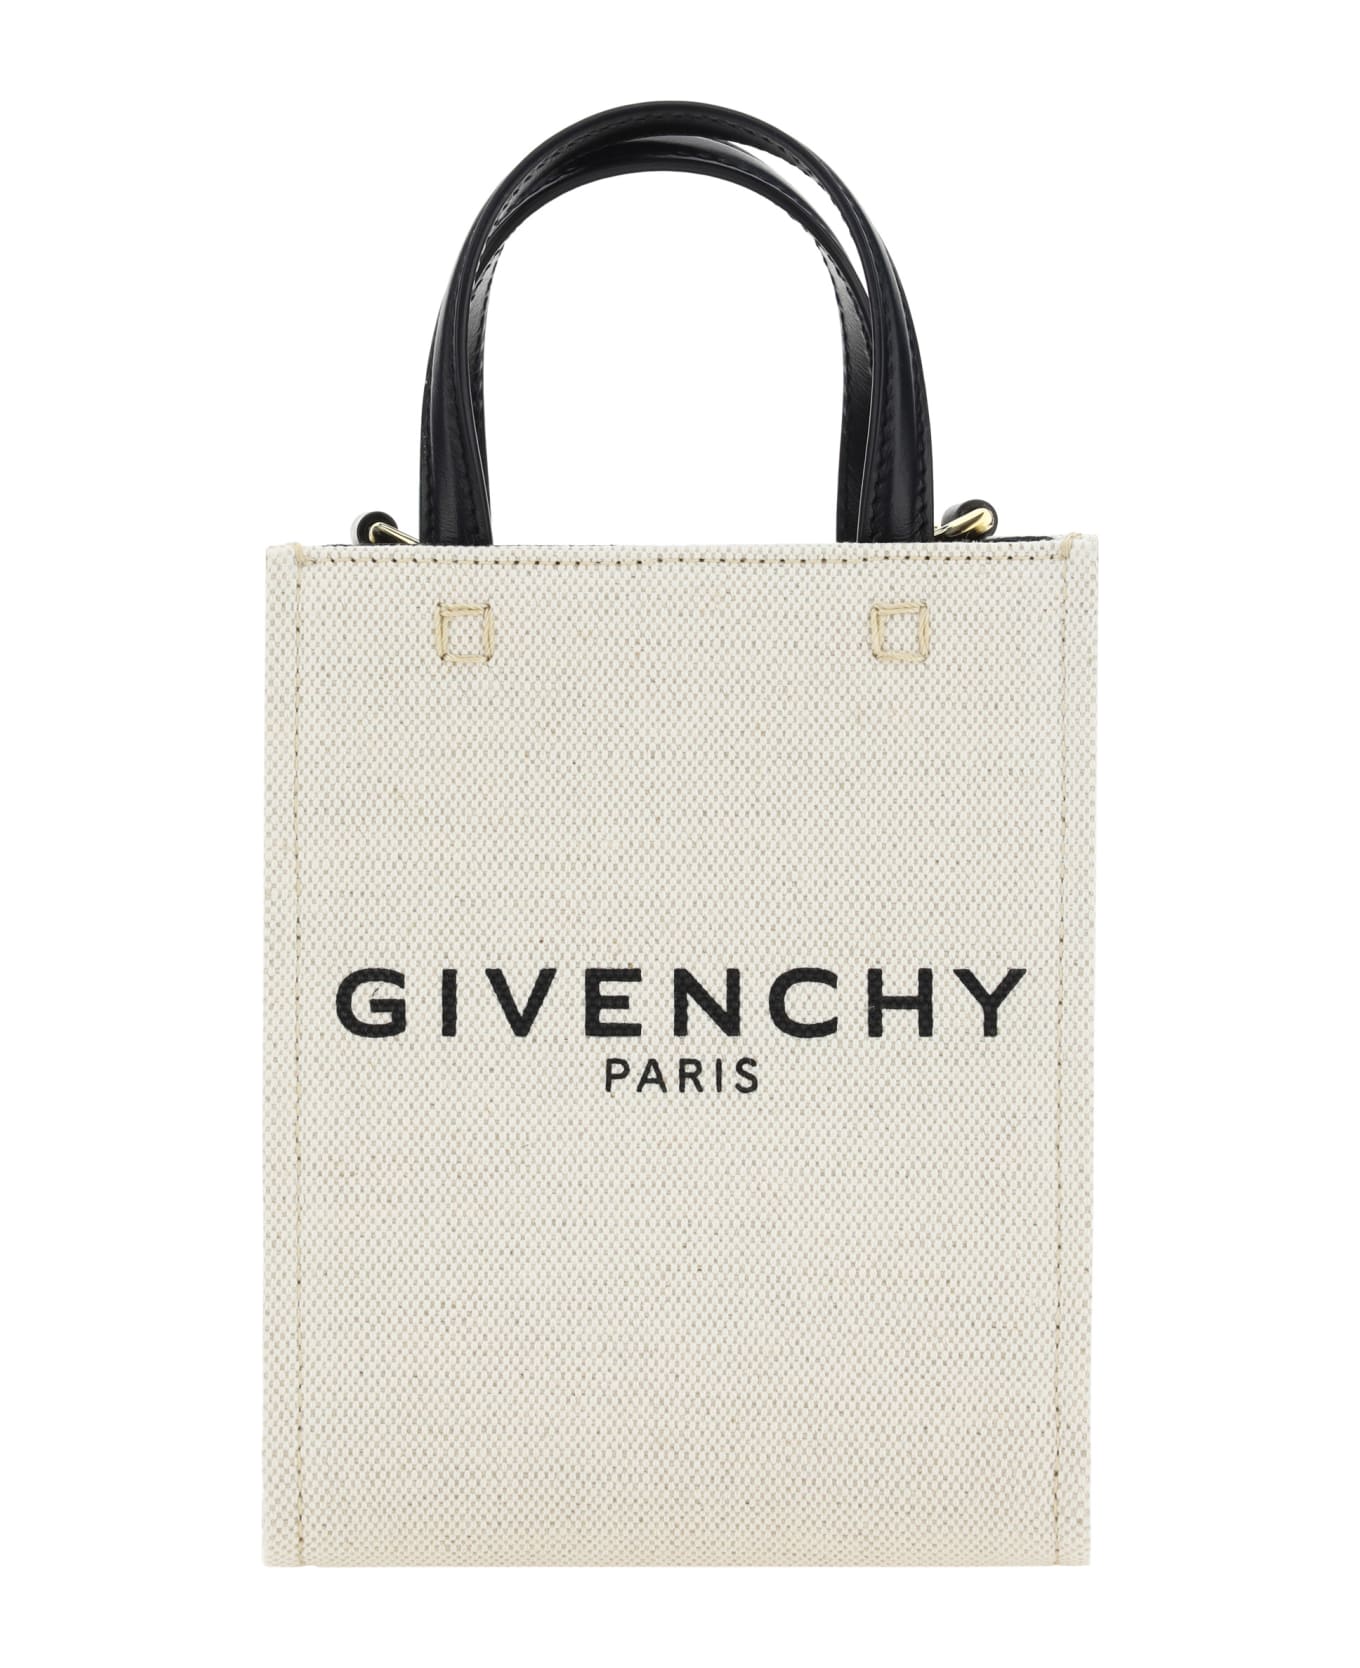 Givenchy G-tote Bag - Beige/black トートバッグ